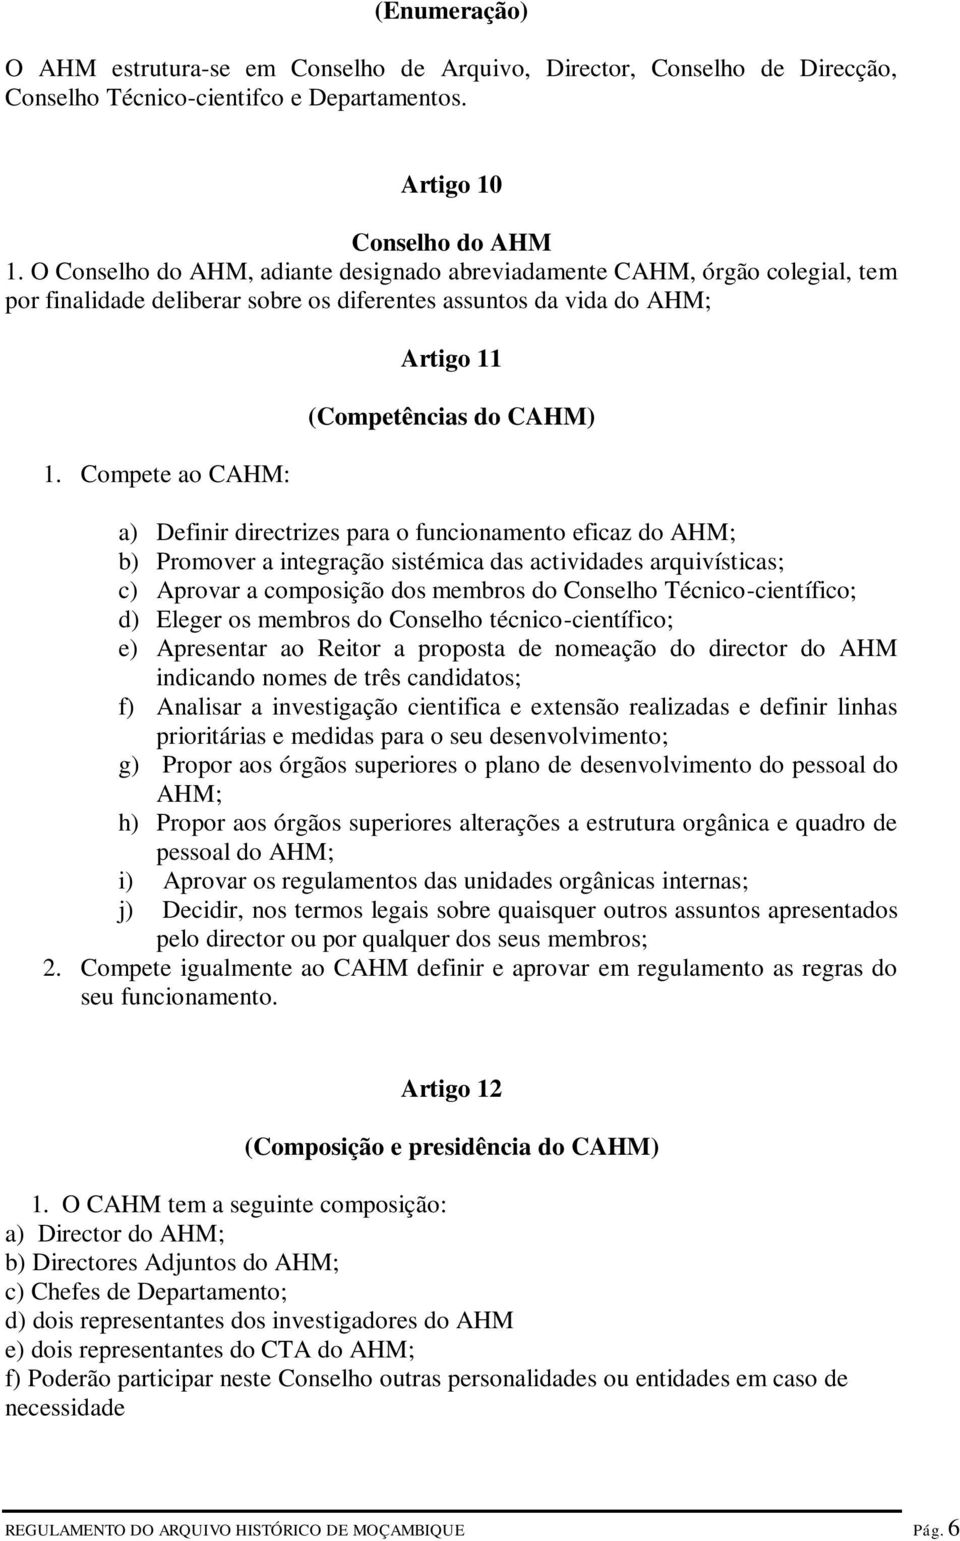 Compete ao CAHM: Artigo 11 (Competências do CAHM) a) Definir directrizes para o funcionamento eficaz do AHM; b) Promover a integração sistémica das actividades arquivísticas; c) Aprovar a composição